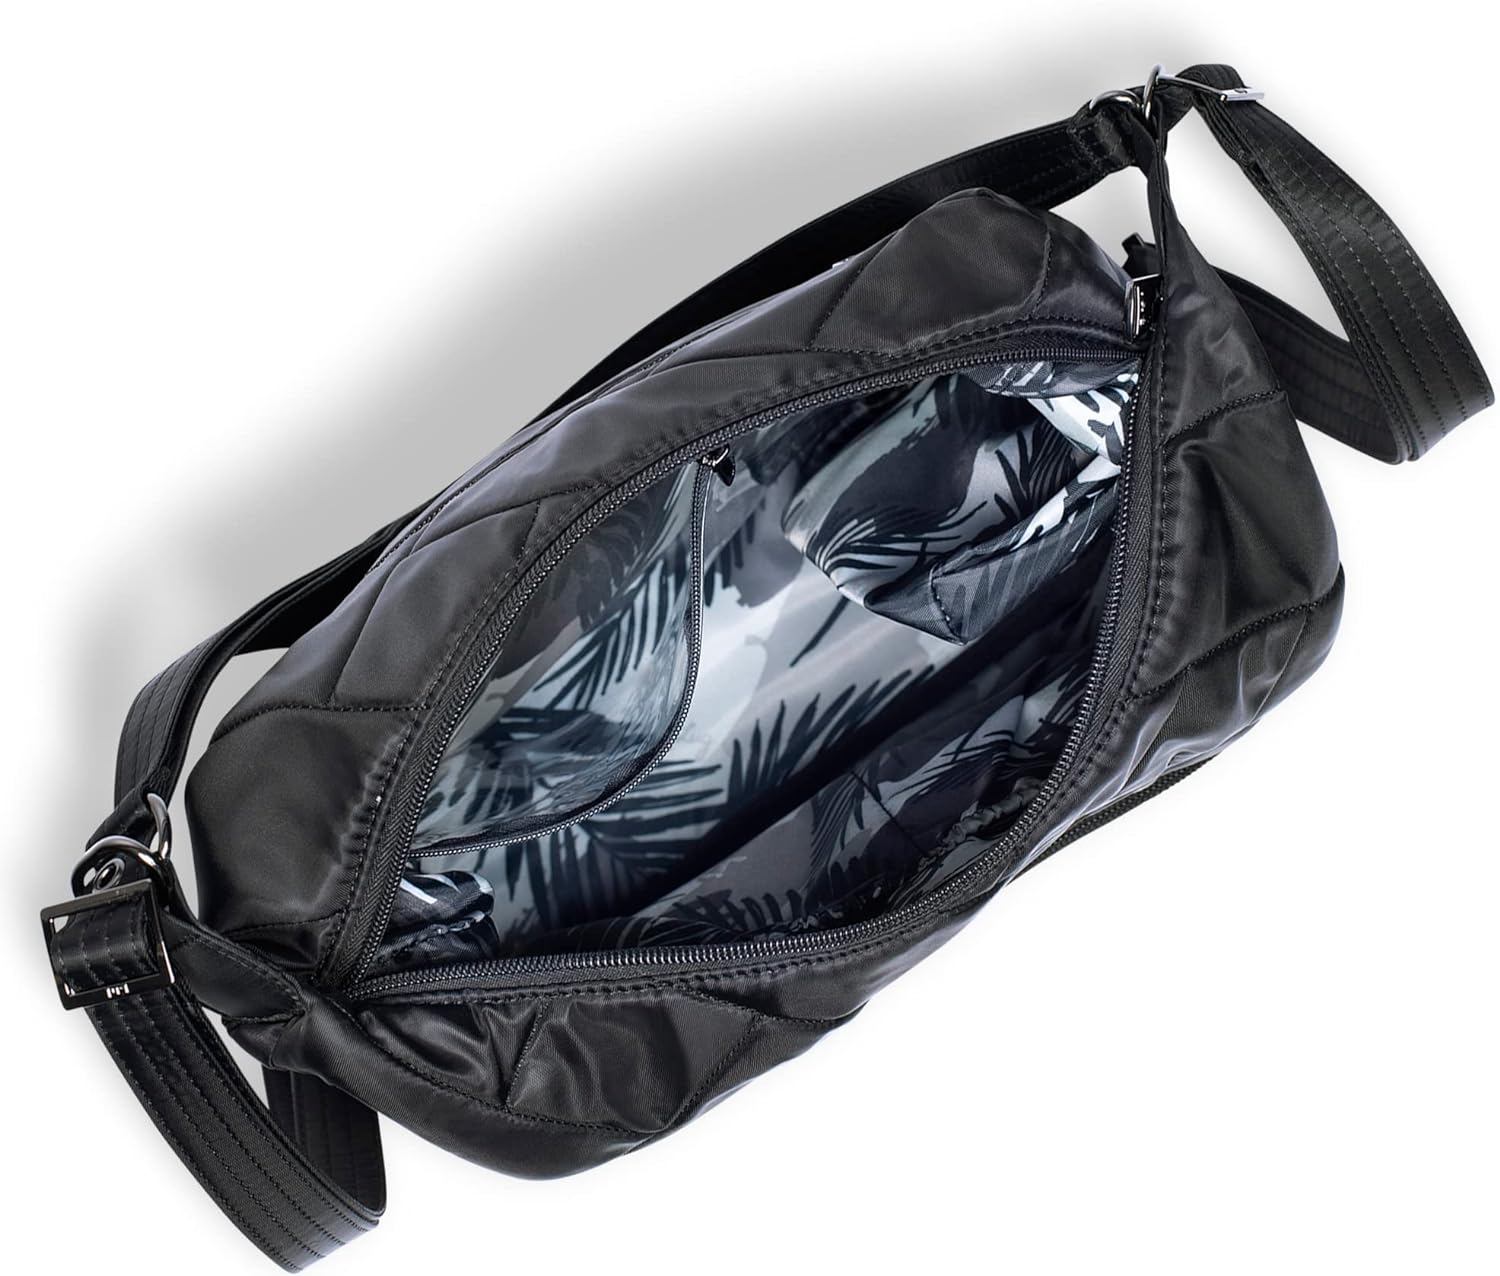 Zipliner 2 Convertible Shoulder Bag/Backpack- Midnight Black